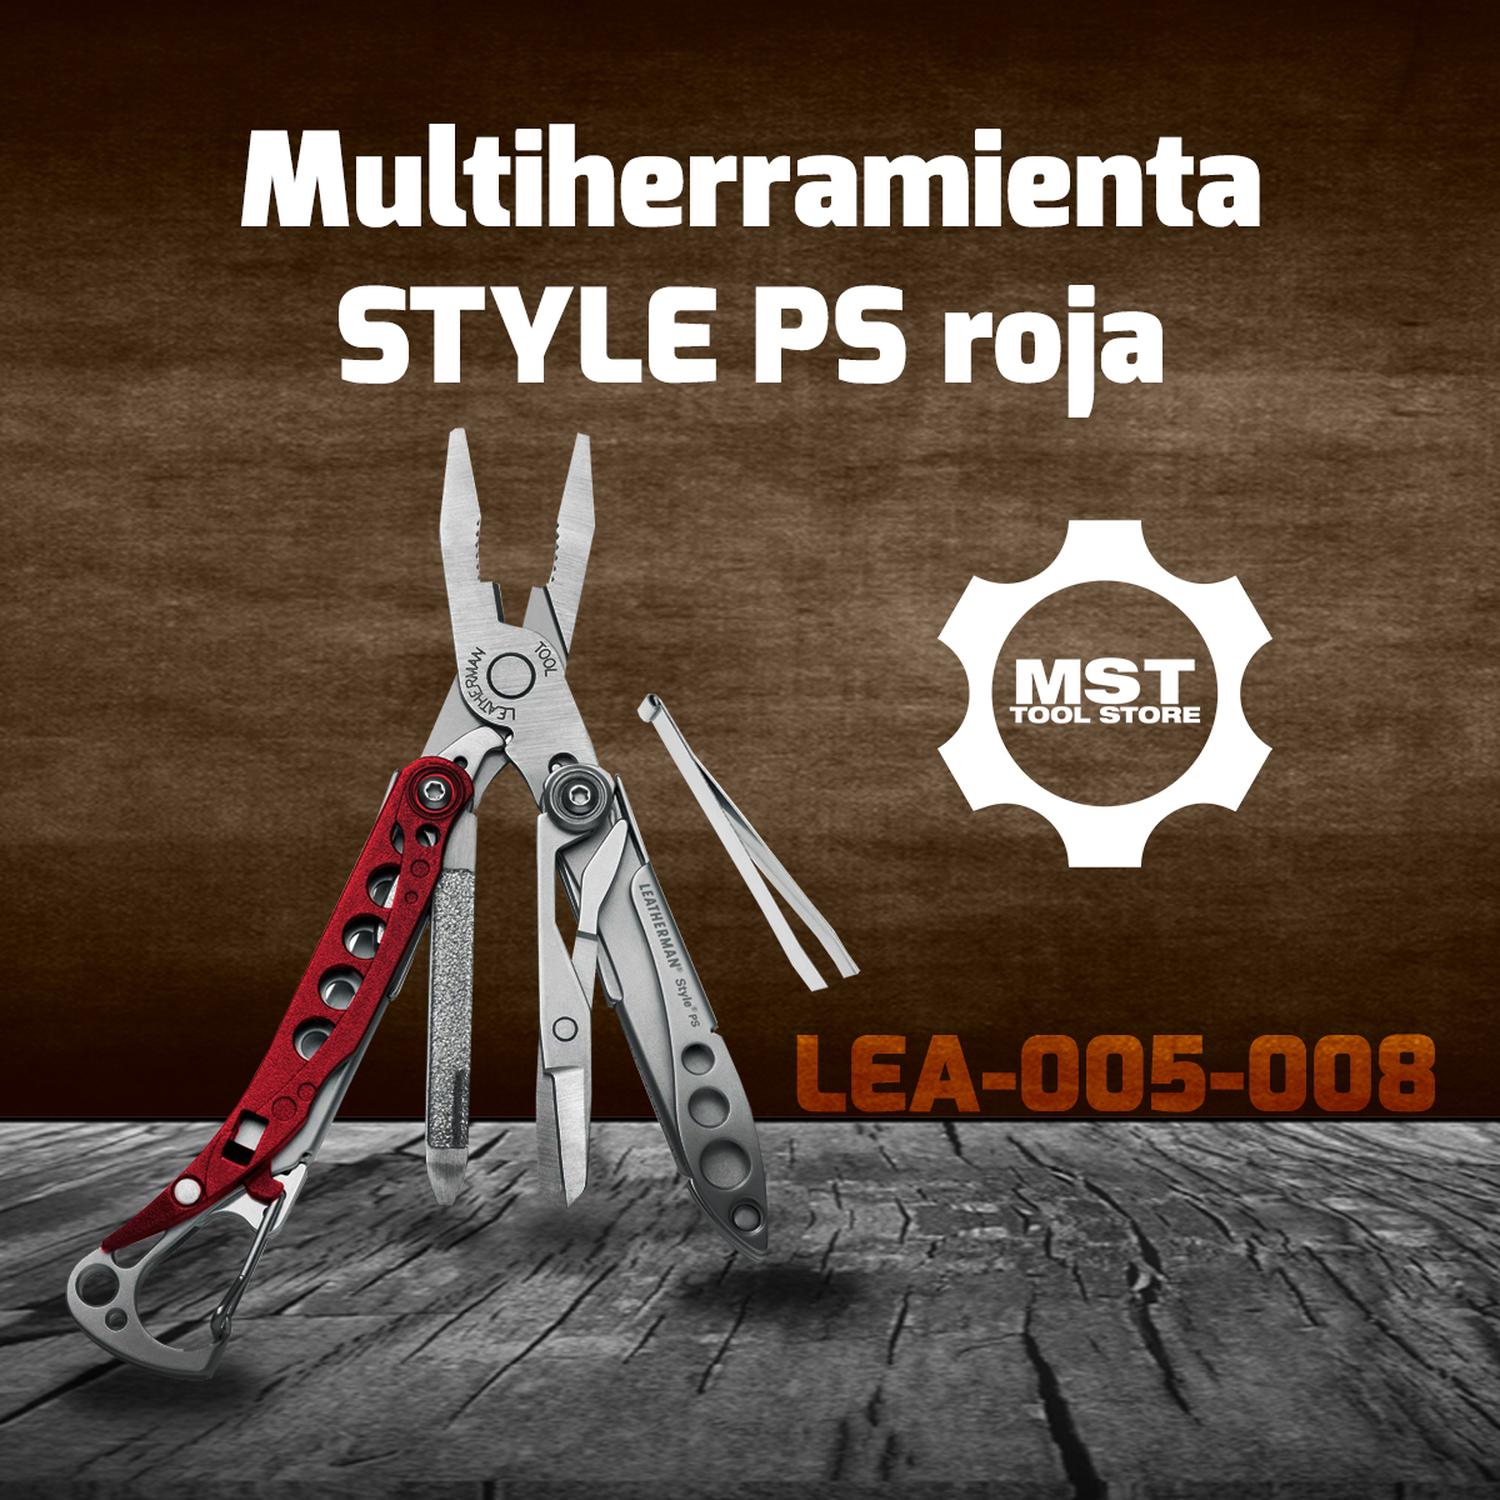 LEATHERMAN LEA-005-008 Multiherramienta STYLE PS roja – MST Tool Store